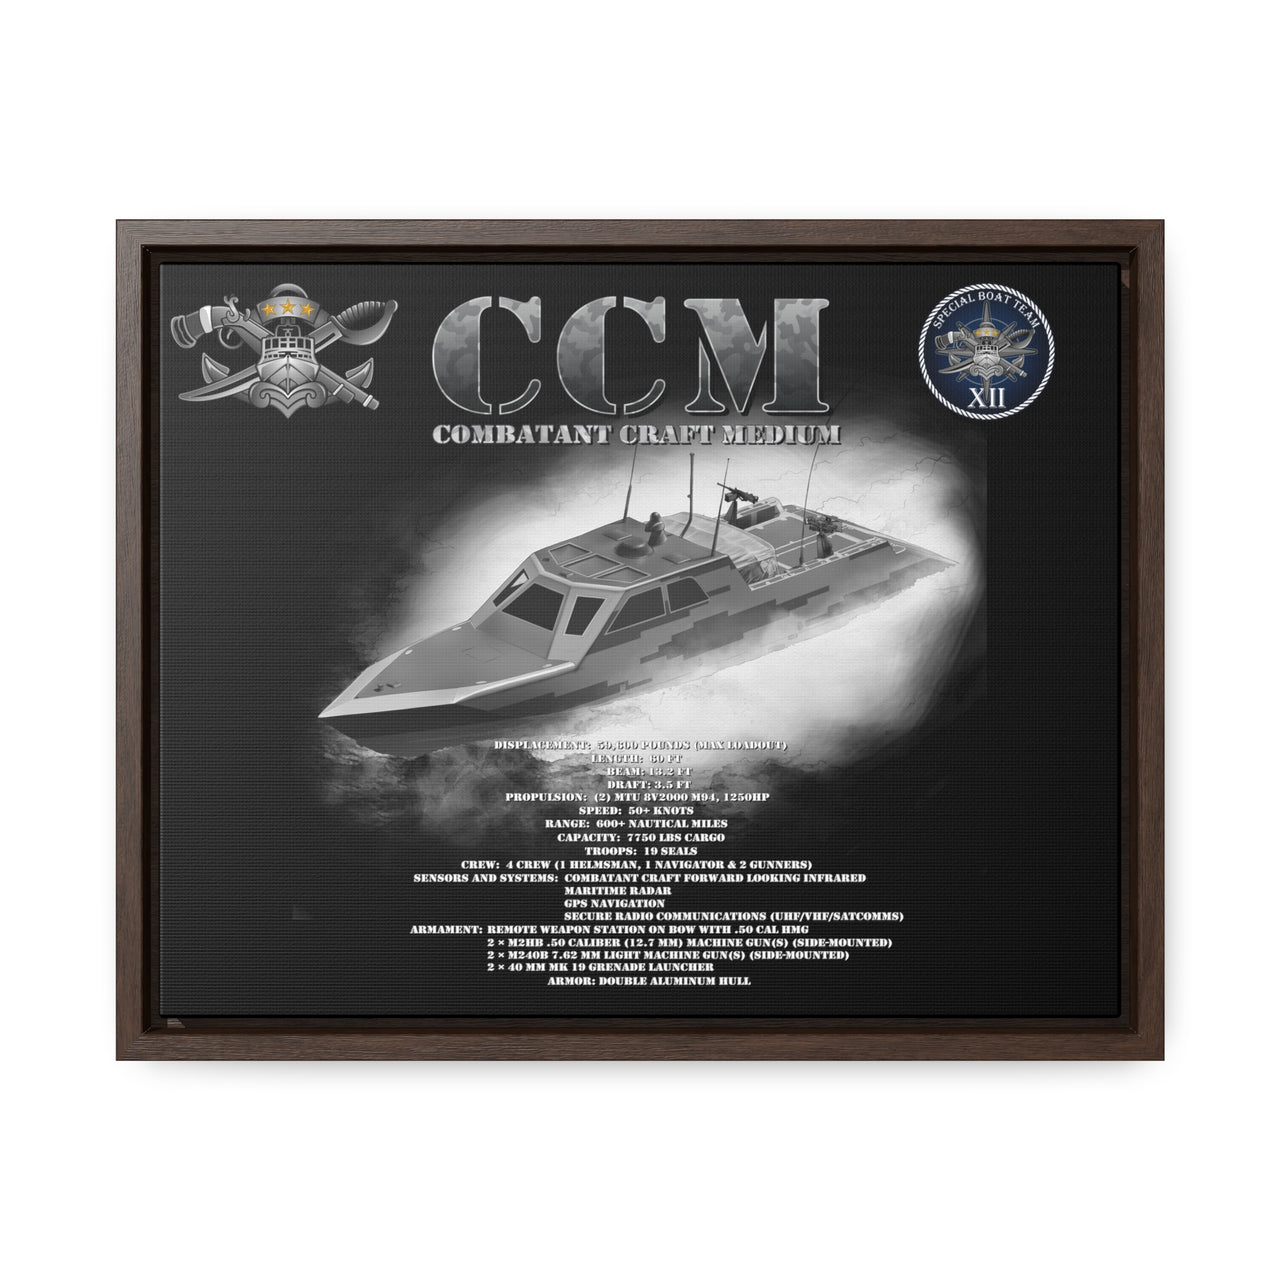 CCM - Combatant Craft Medium *Custom SBT 12